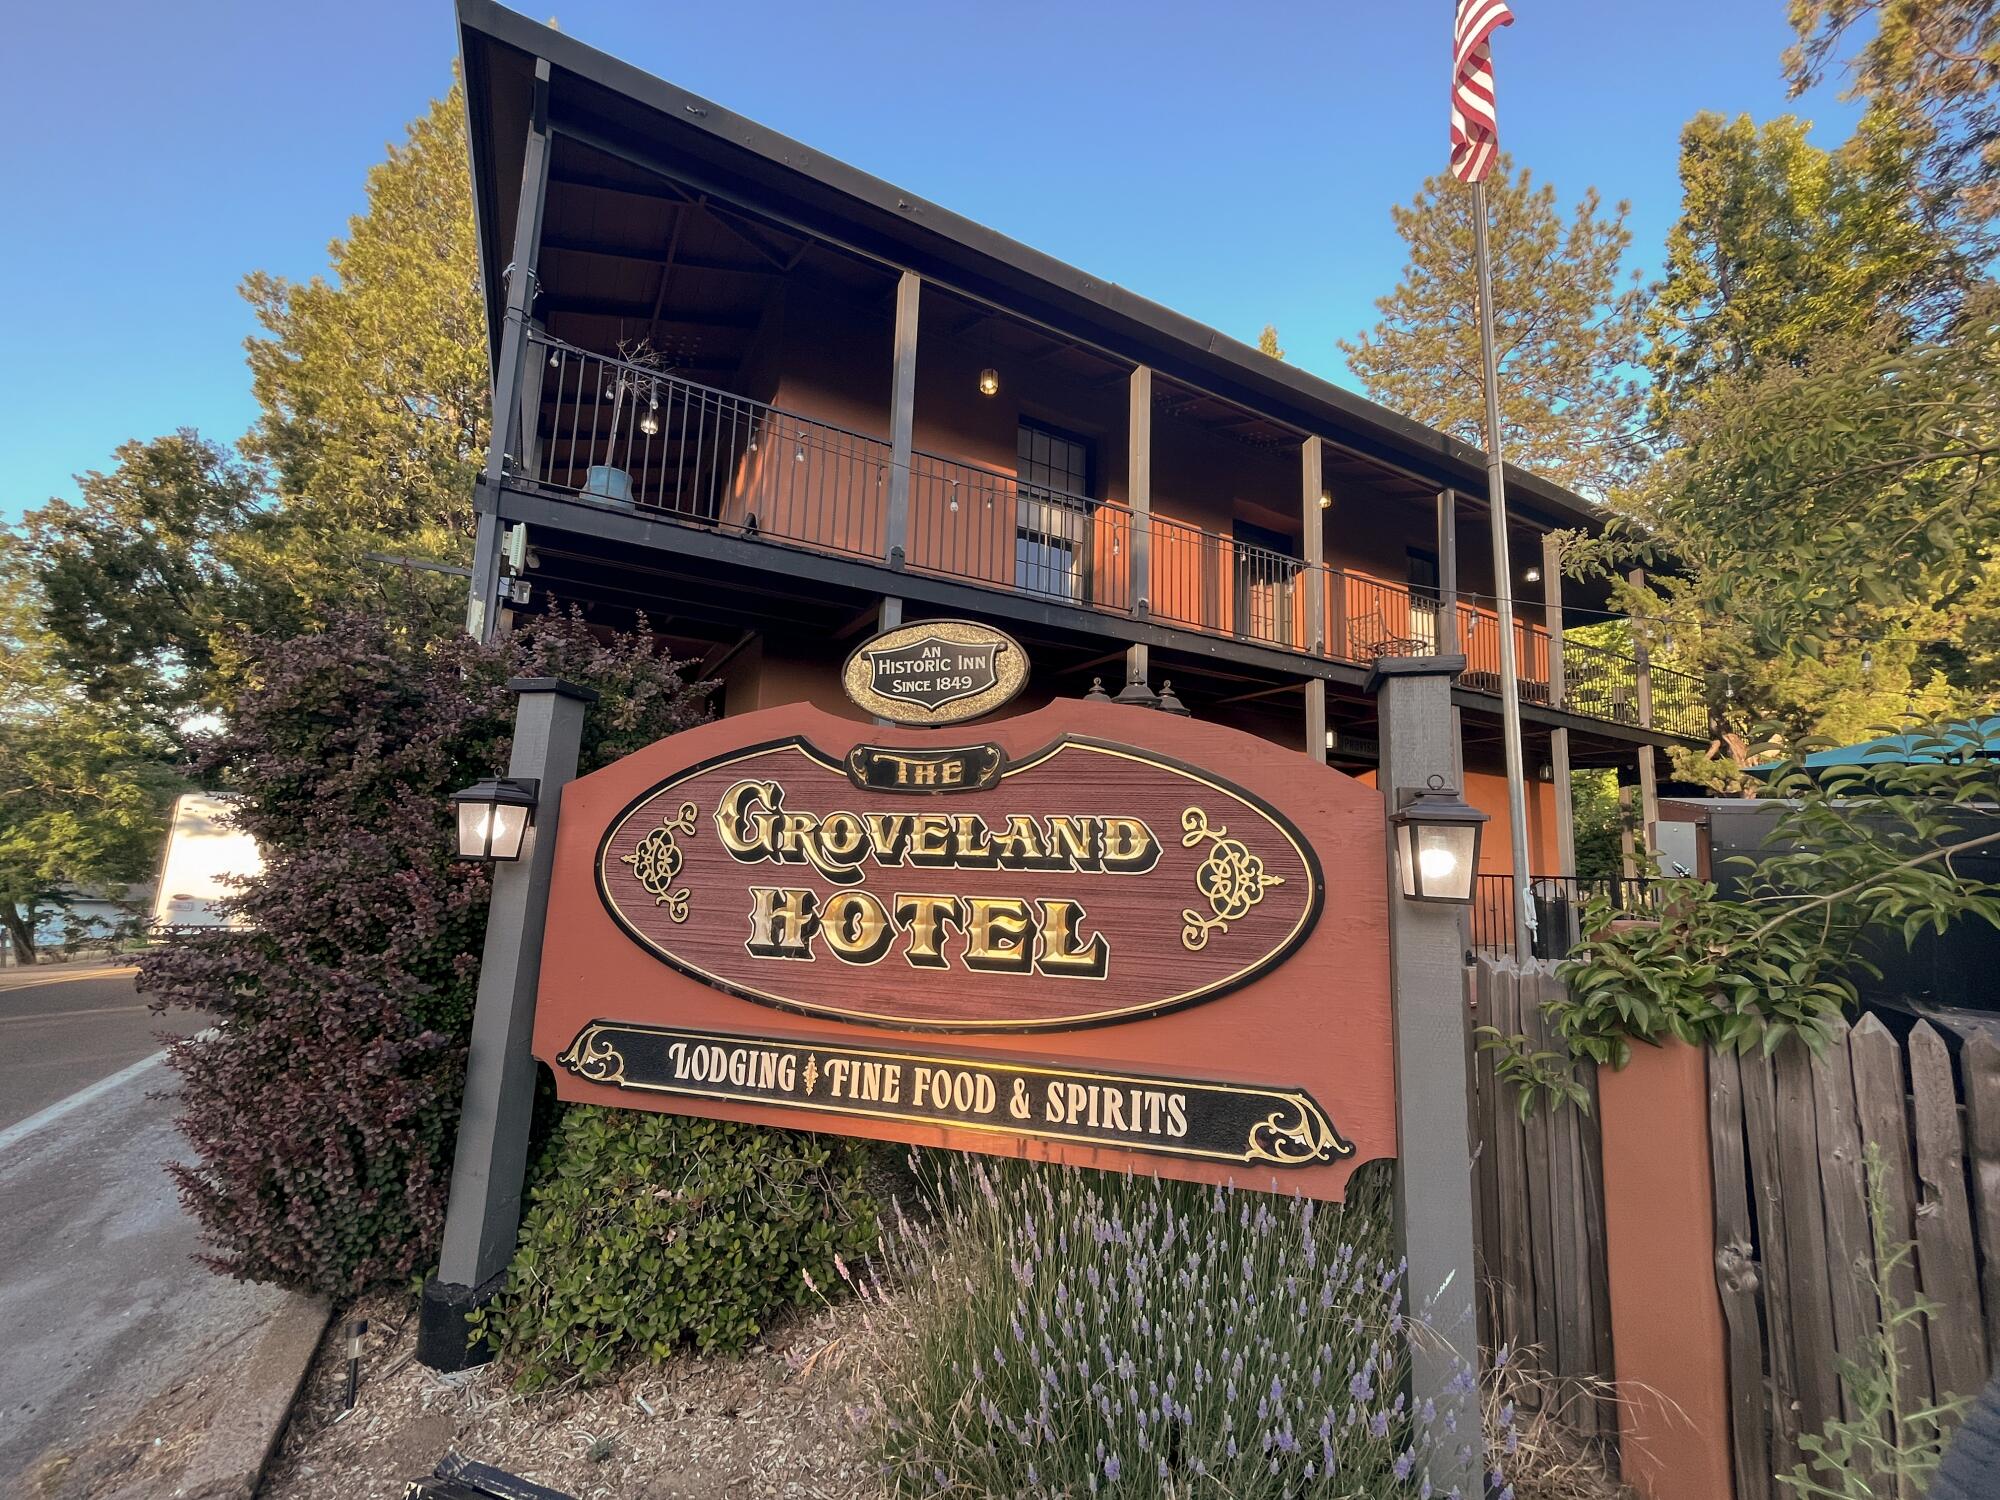 Groveland Hotel, Groveland, one of the gateways to Yosemite National Park.